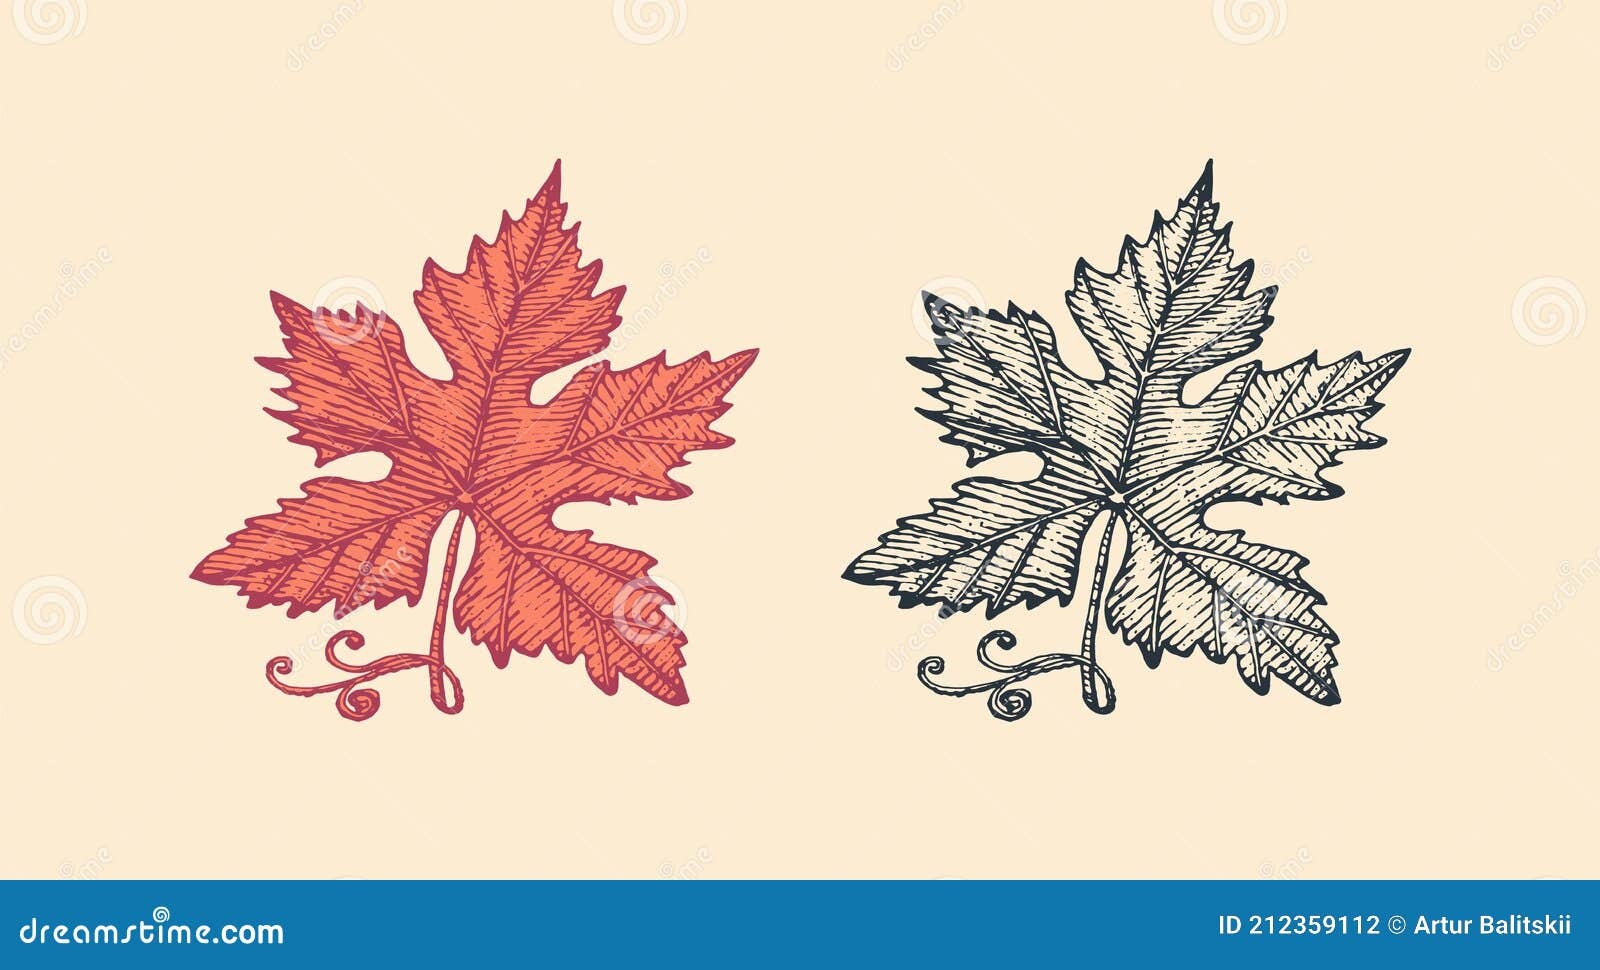 Hand drawn maple leaf vintage engrave sketch Vector Image